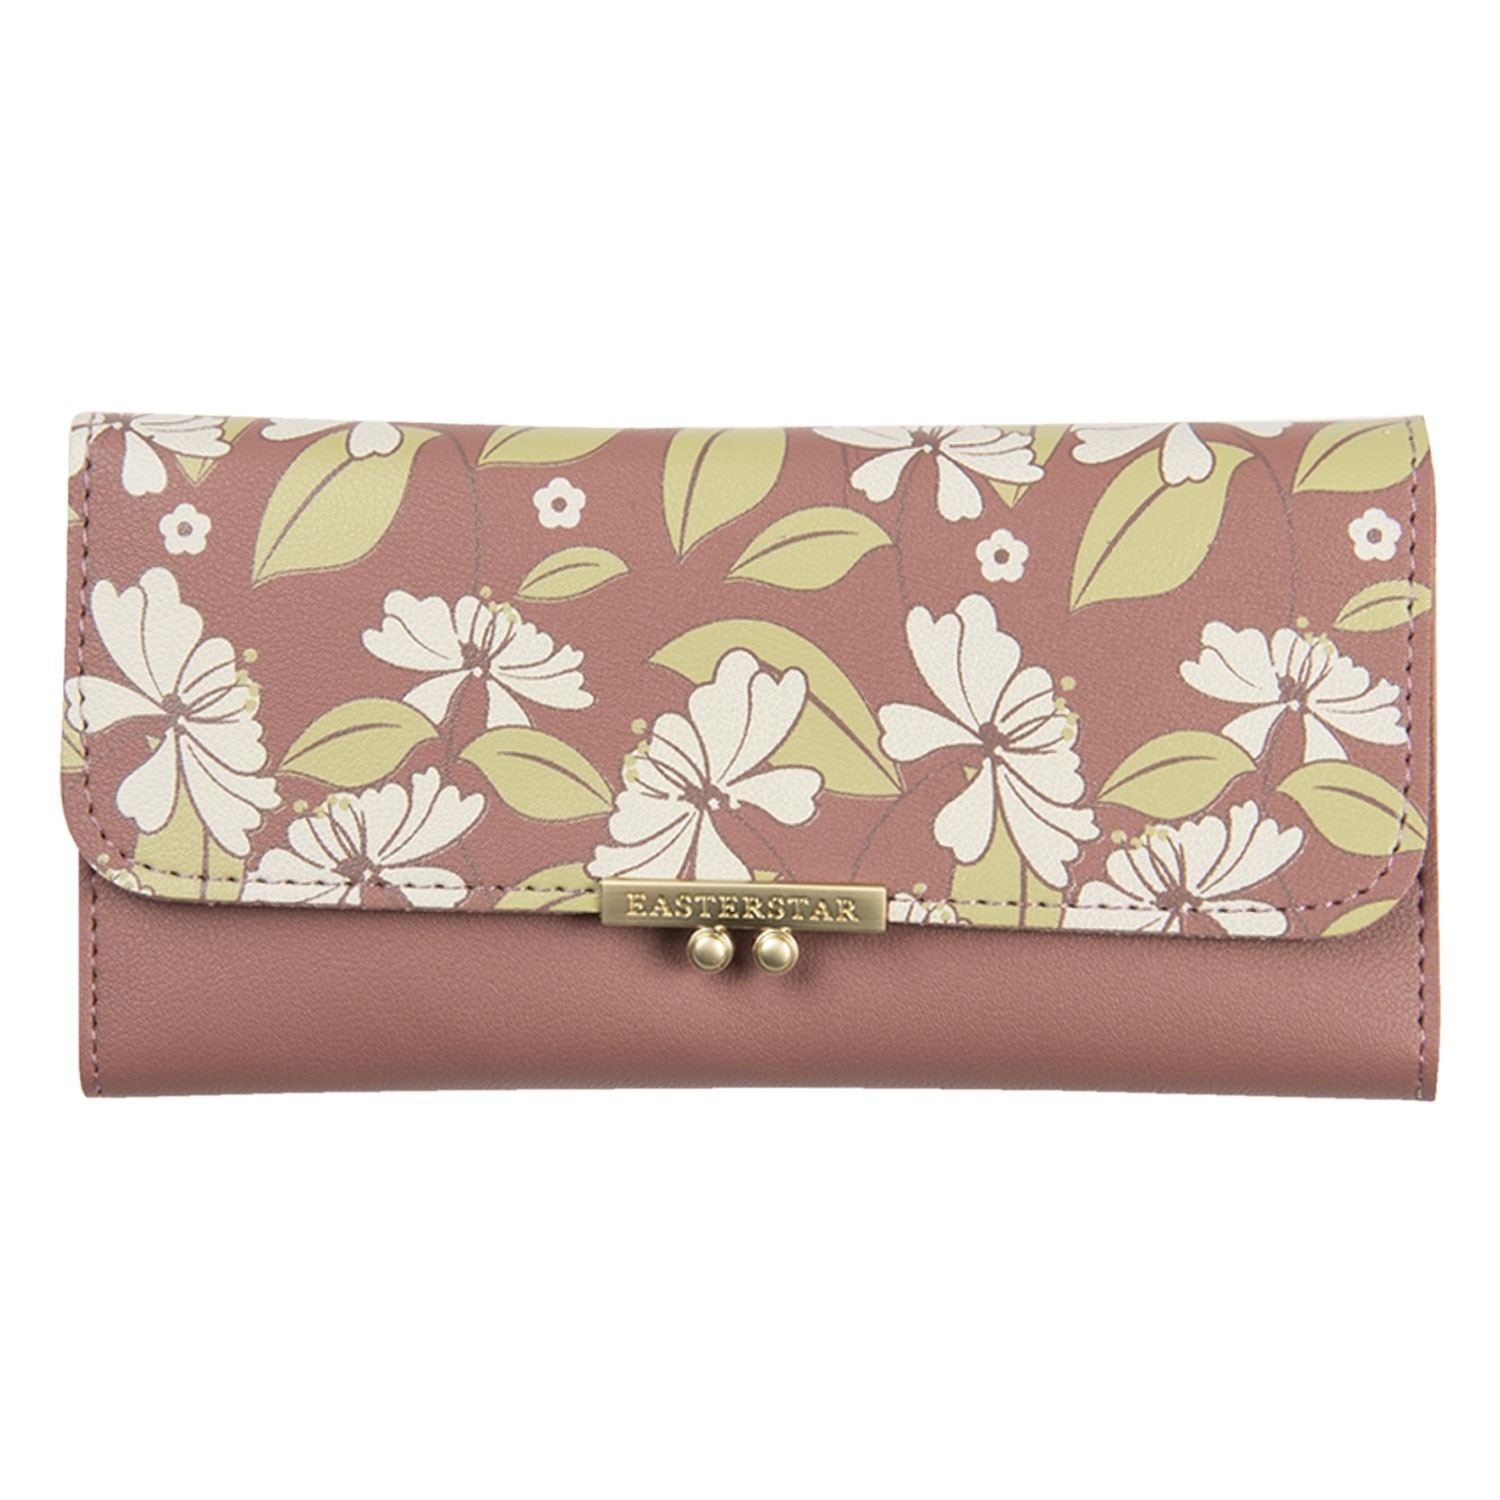 Růžová peněženka s květy Estar- 19*9 cm JZWA0116P